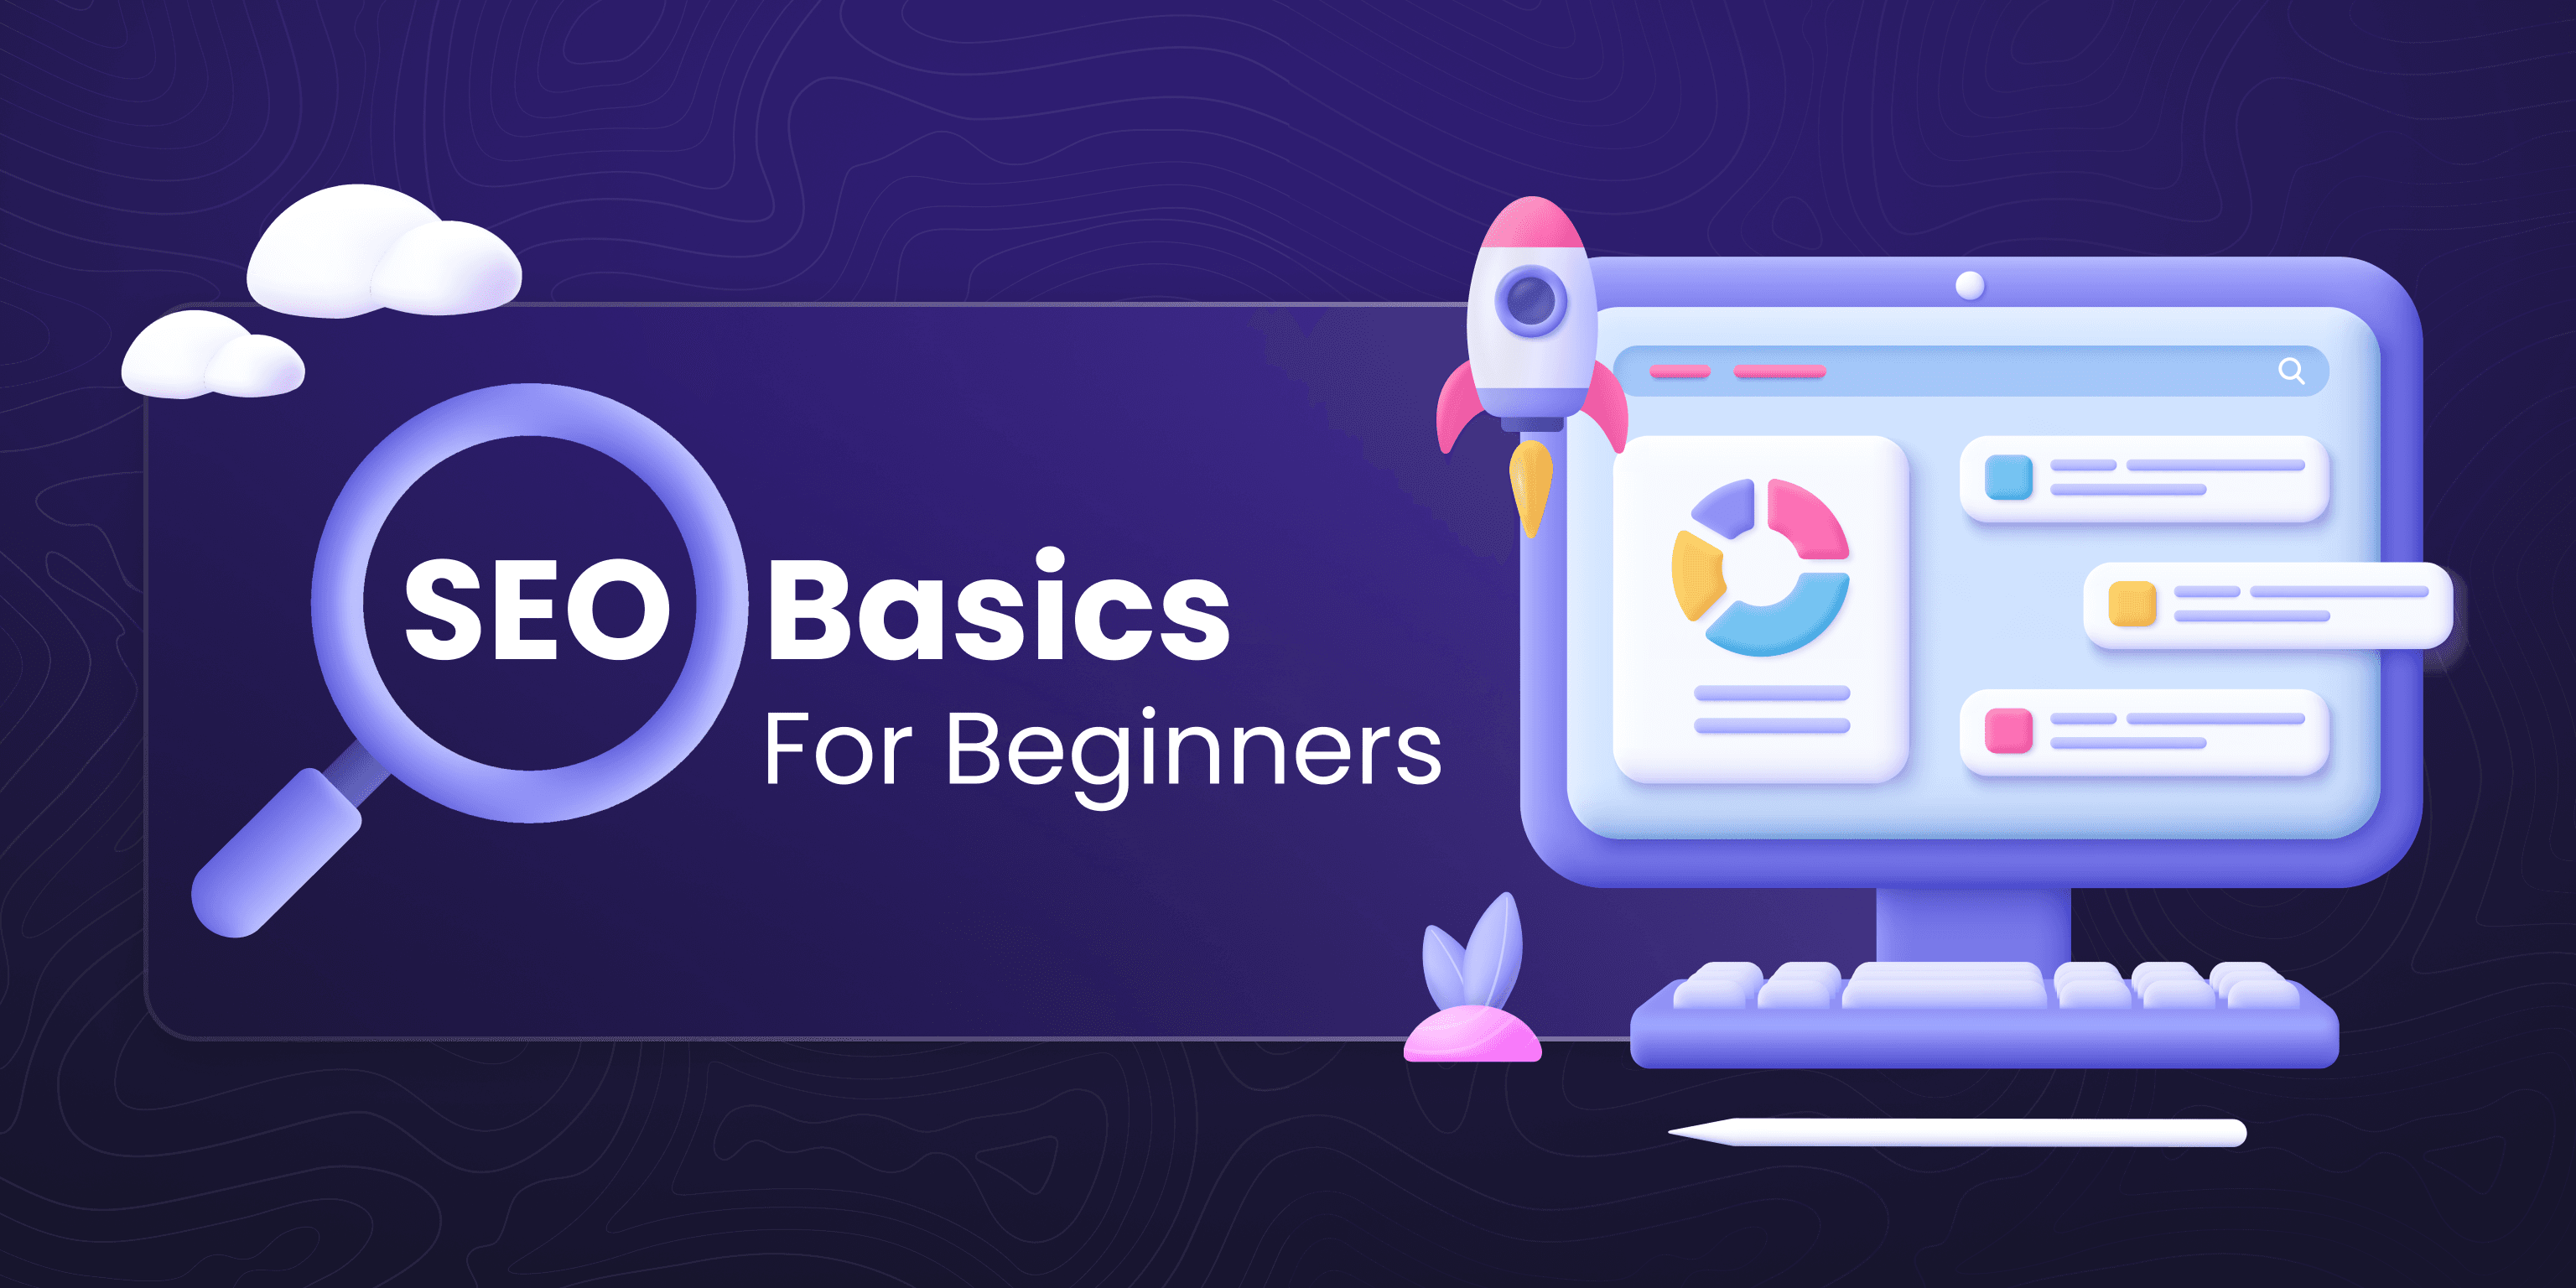 SEO Basics for Beginners.